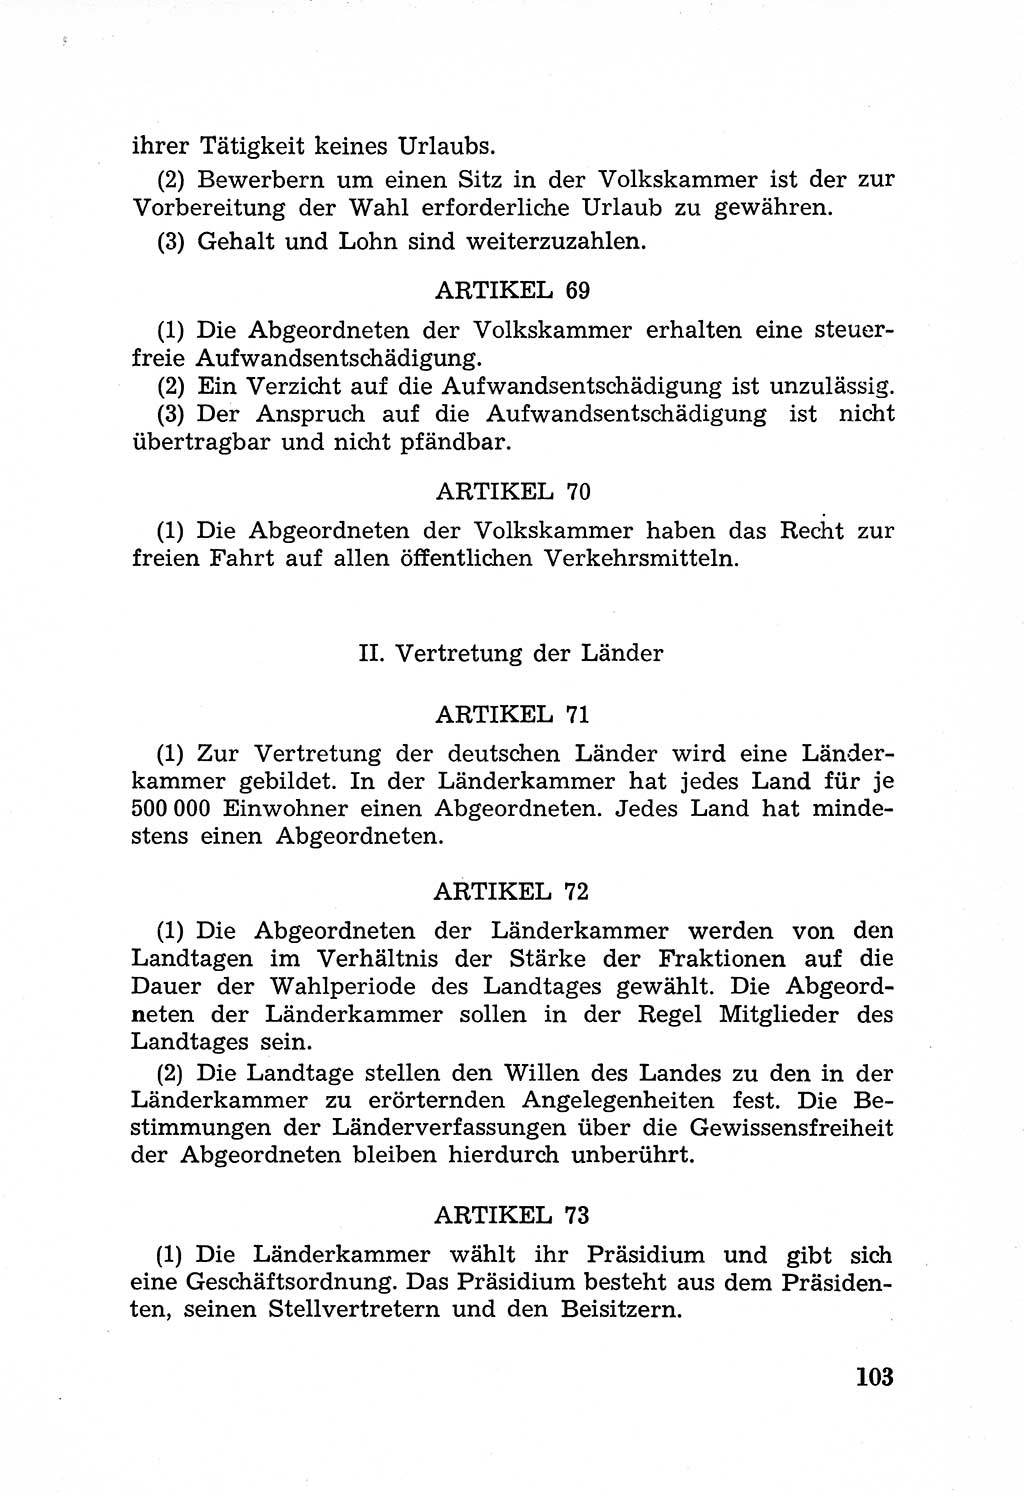 Rechtsstaat in zweierlei Hinsicht, Untersuchungsausschuß freiheitlicher Juristen (UfJ) [Bundesrepublik Deutschland (BRD)] 1956, Seite 103 (R.-St. UfJ BRD 1956, S. 103)